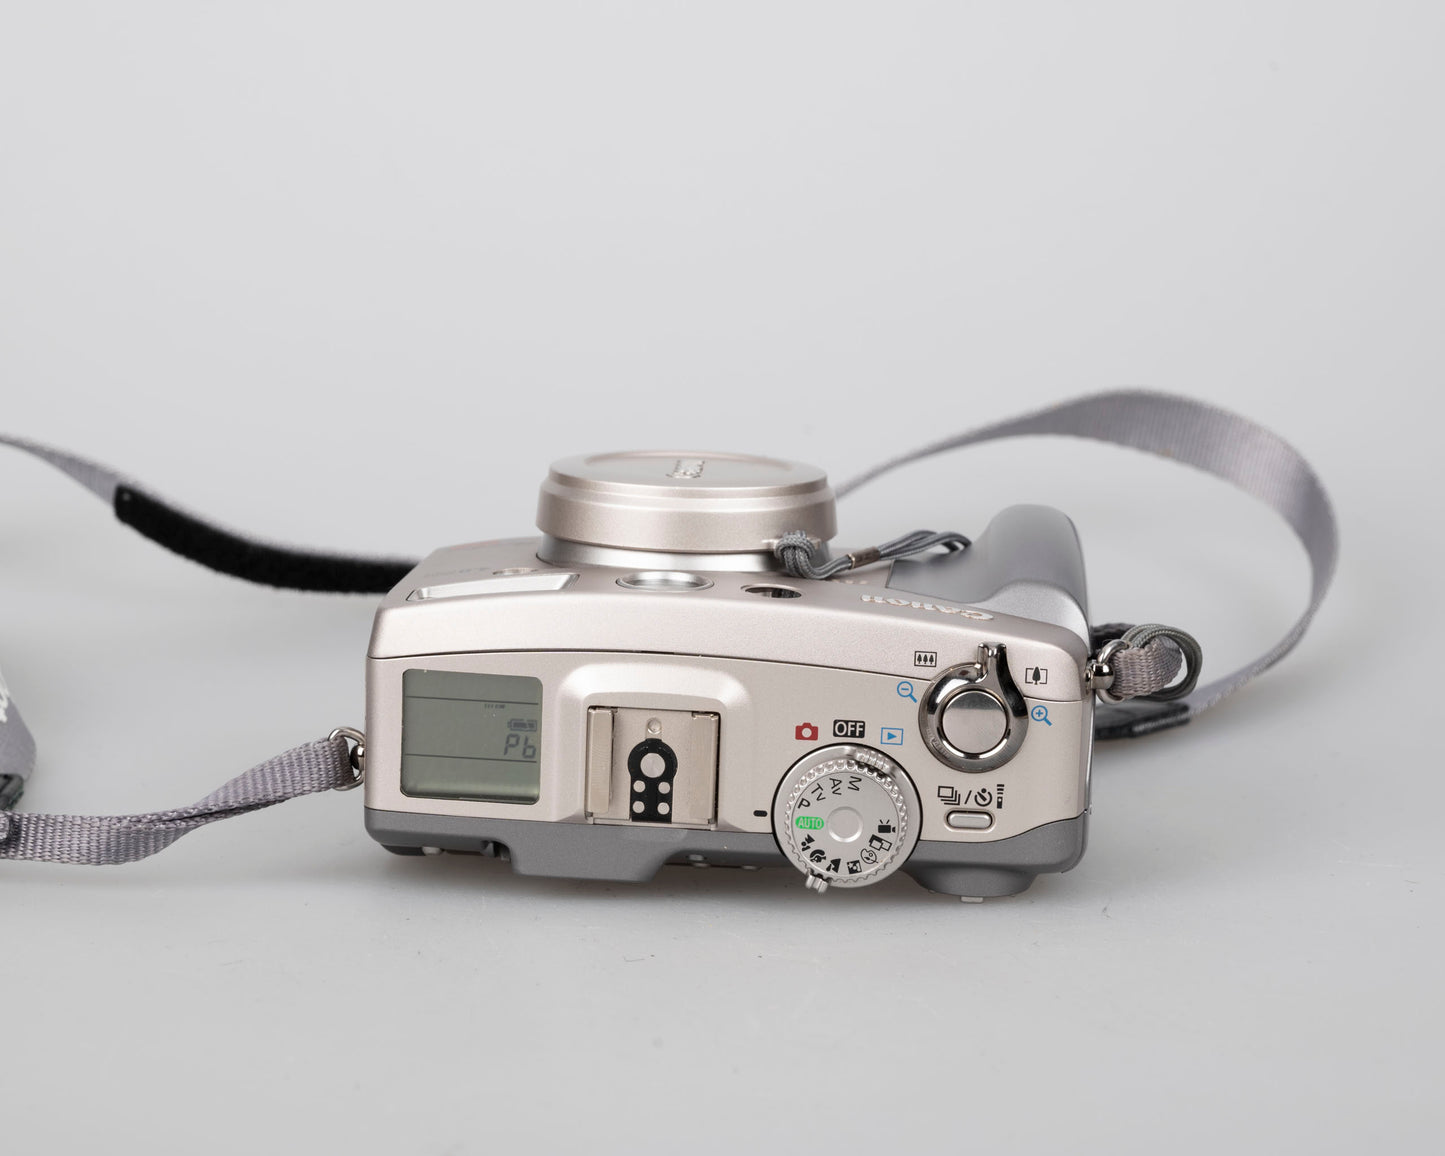 Appareil photo numérique Canon Powershot G2 avec capteur CCD 4 MP ; comprend une carte CF de 256 Mo + 2 batteries avec chargeur + boîte d'origine, manuels et accessoires